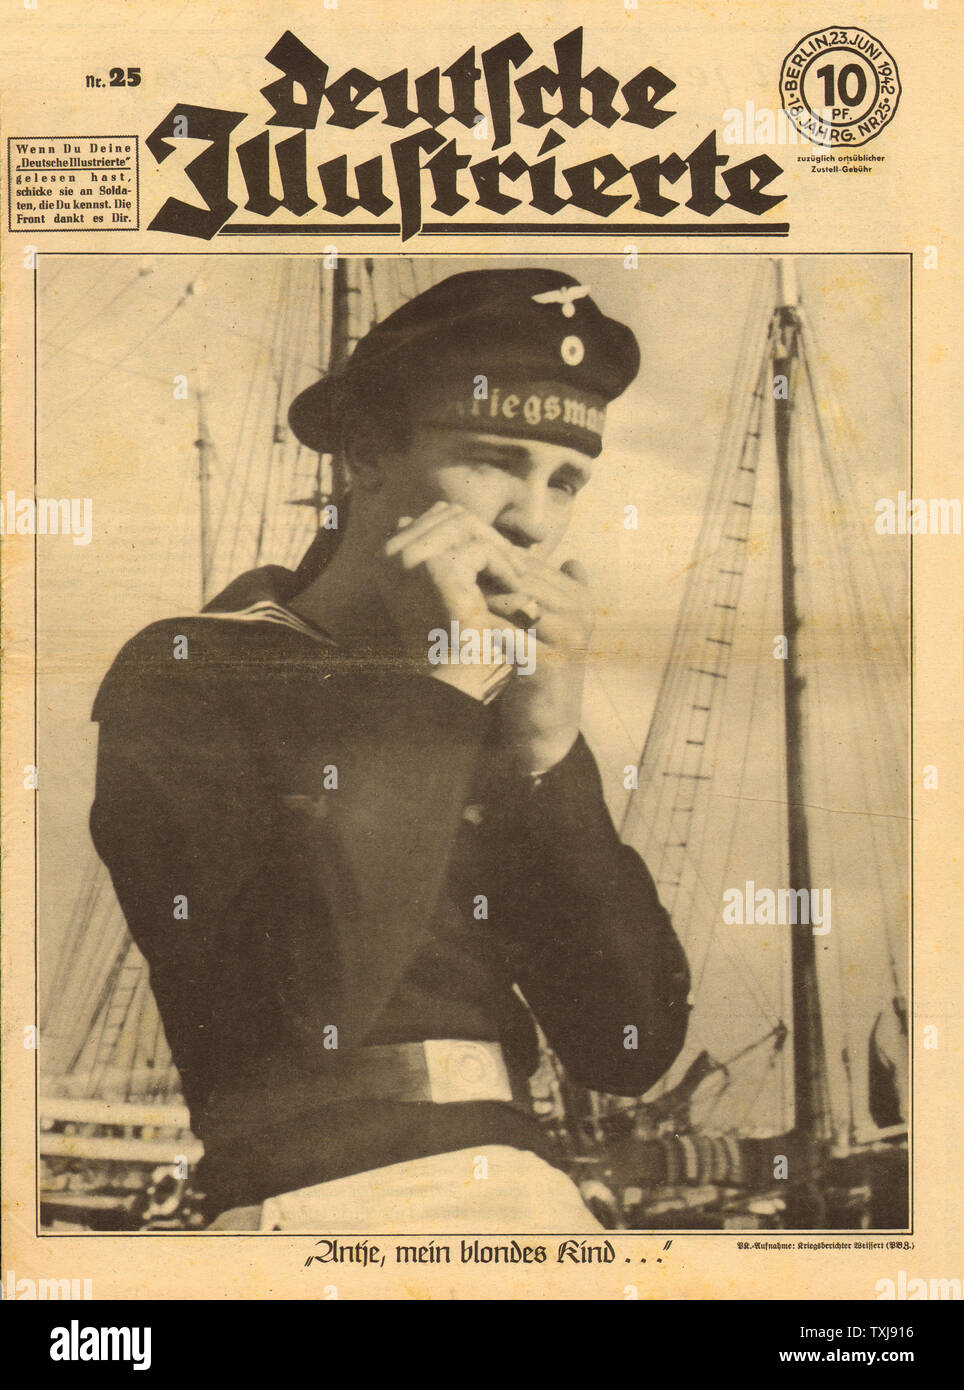 1942 Deutscher Illustrierte Kriegsmarine German navy sailor Stock Photo